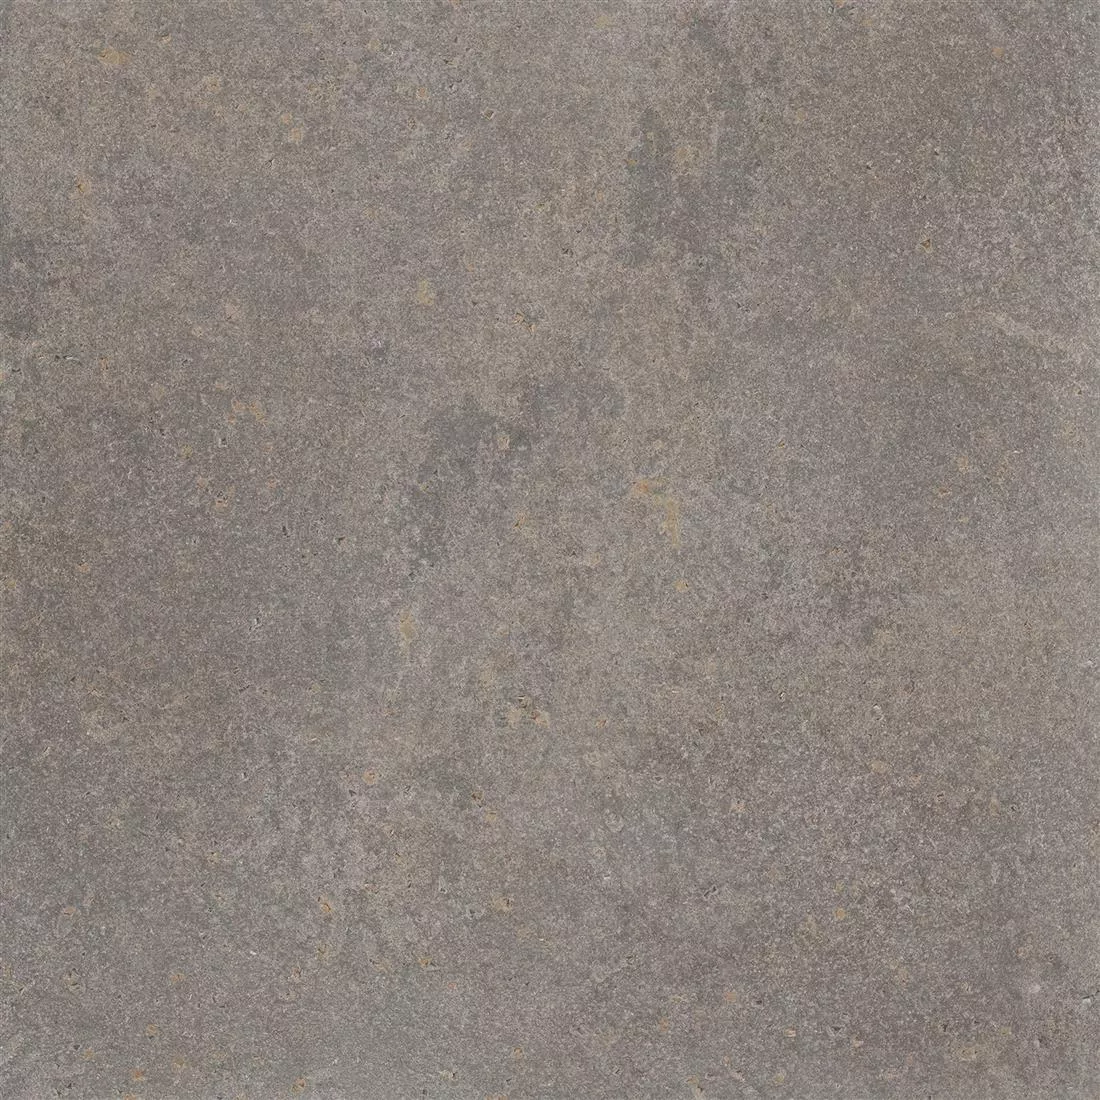 Padrão Ladrilhos Olhar de Pedra Horizon Marrom 60x60cm